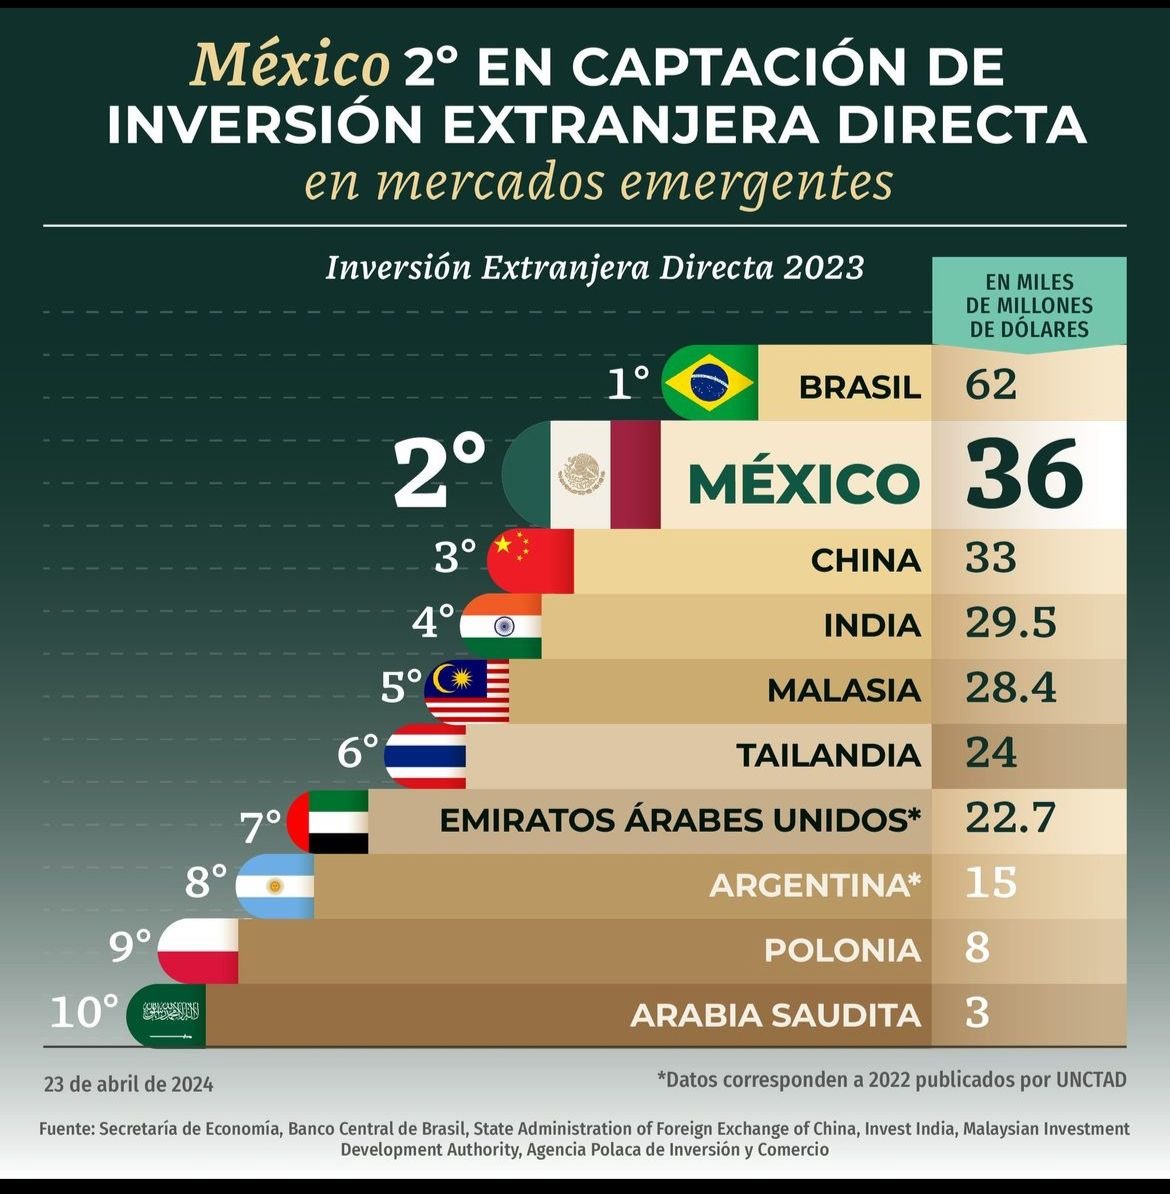 En 2023, la confianza en México permitió rebasar a China e India como destinos de la inversión extranjera directa, la relocalización será un hecho. 

#ClaudiaArrasaDebate